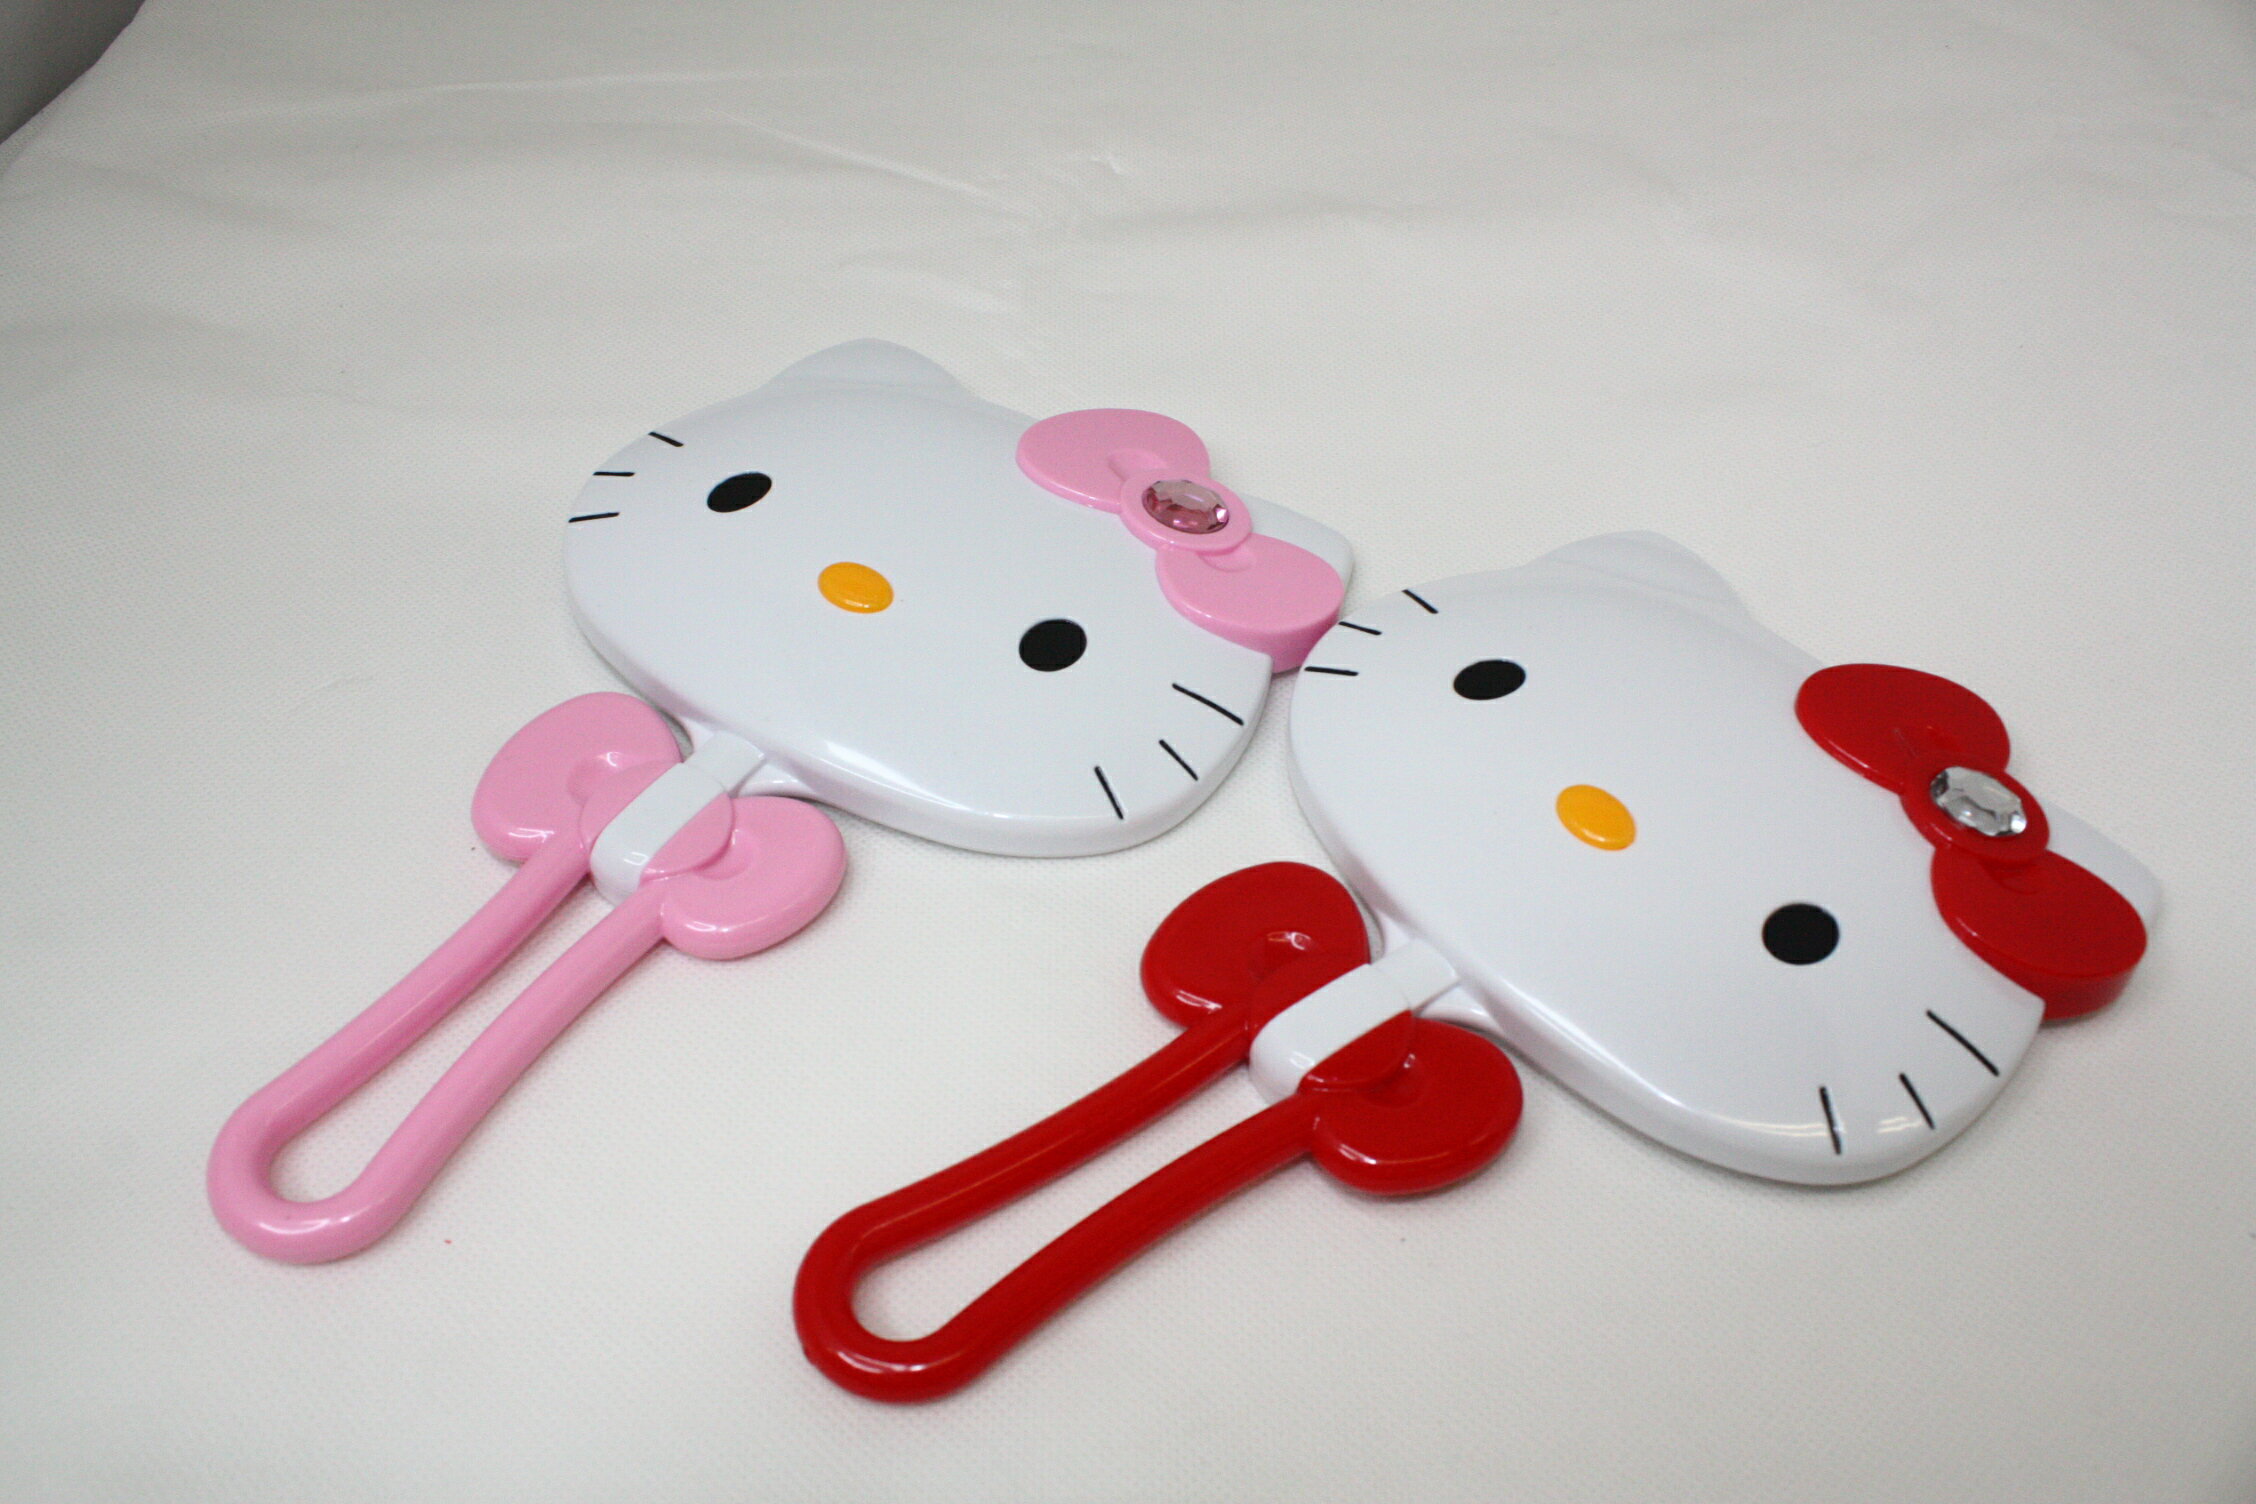 大賀屋 hello kitty 兩用鏡 化妝鏡 桌上鏡 可調角度 紅 粉 凱蒂貓 三麗鷗 正版 T0001 71-72